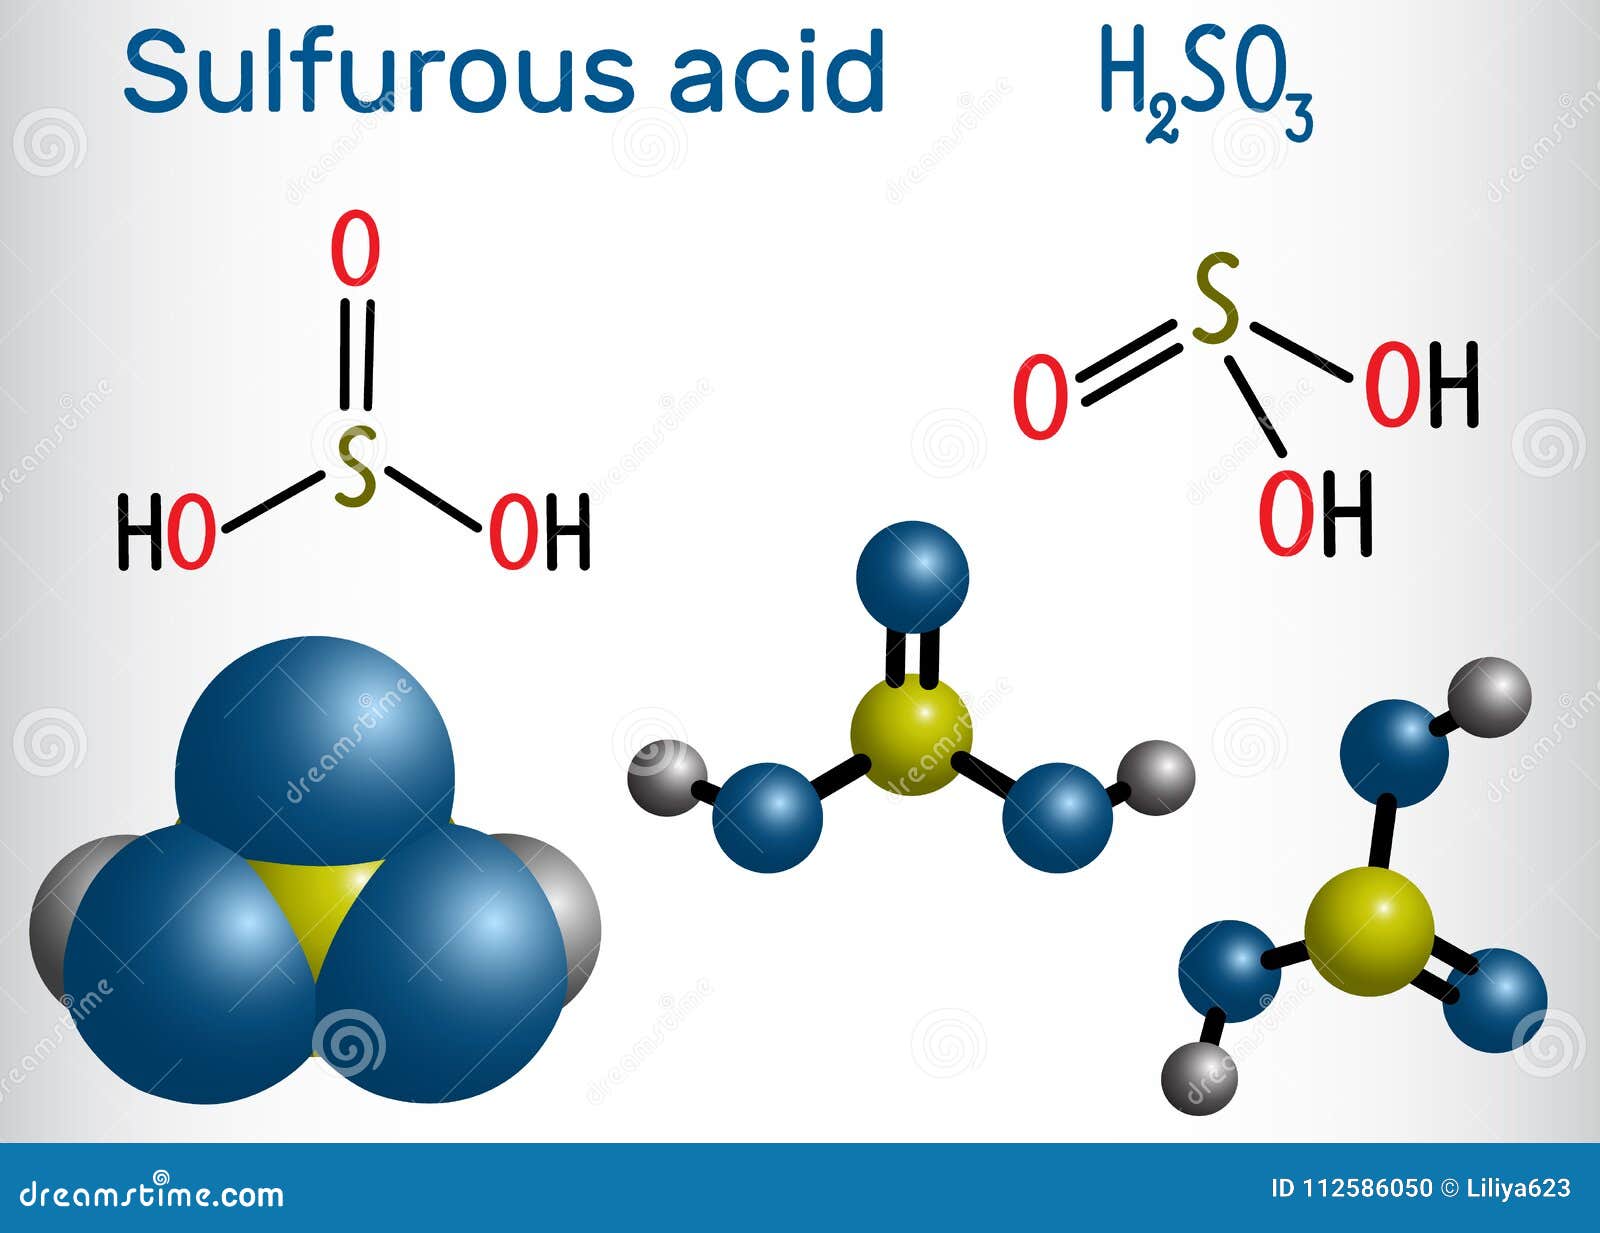 Сернистая кислота 4 формула. Строение молекулы сернистой кислоты h2so3. Структурная формула молекулы h2so3. Молекула серной кислоты структурная формула. Серная кислота структурная формула.